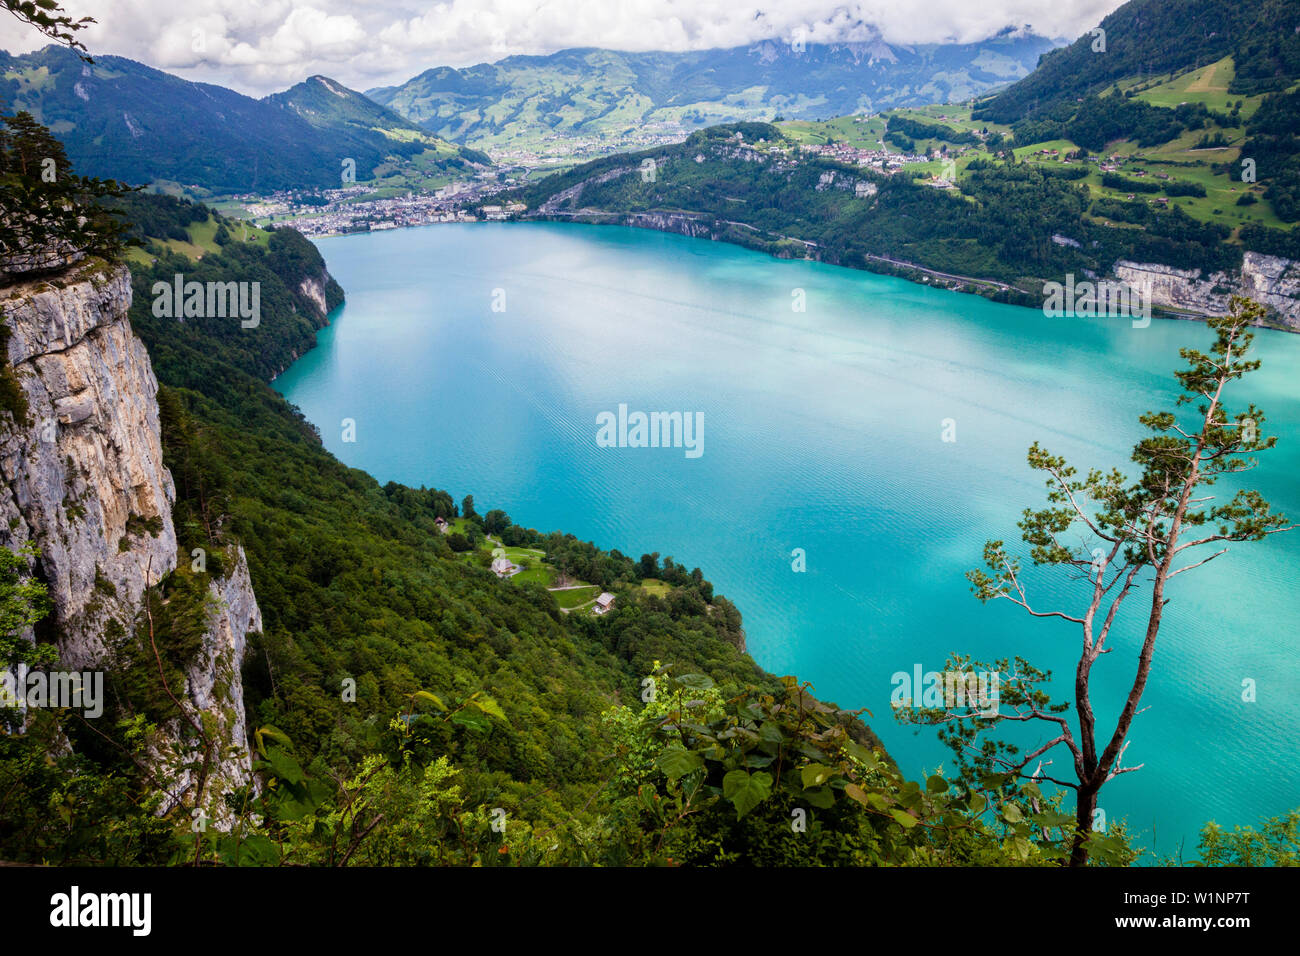 Le lac de Lucerne avec le Ruetli pré, l'origine de la Suisse, dans l'arrière-plan la ville de Brunnen, Canton d'Uri, Suisse centrale, Europe Banque D'Images